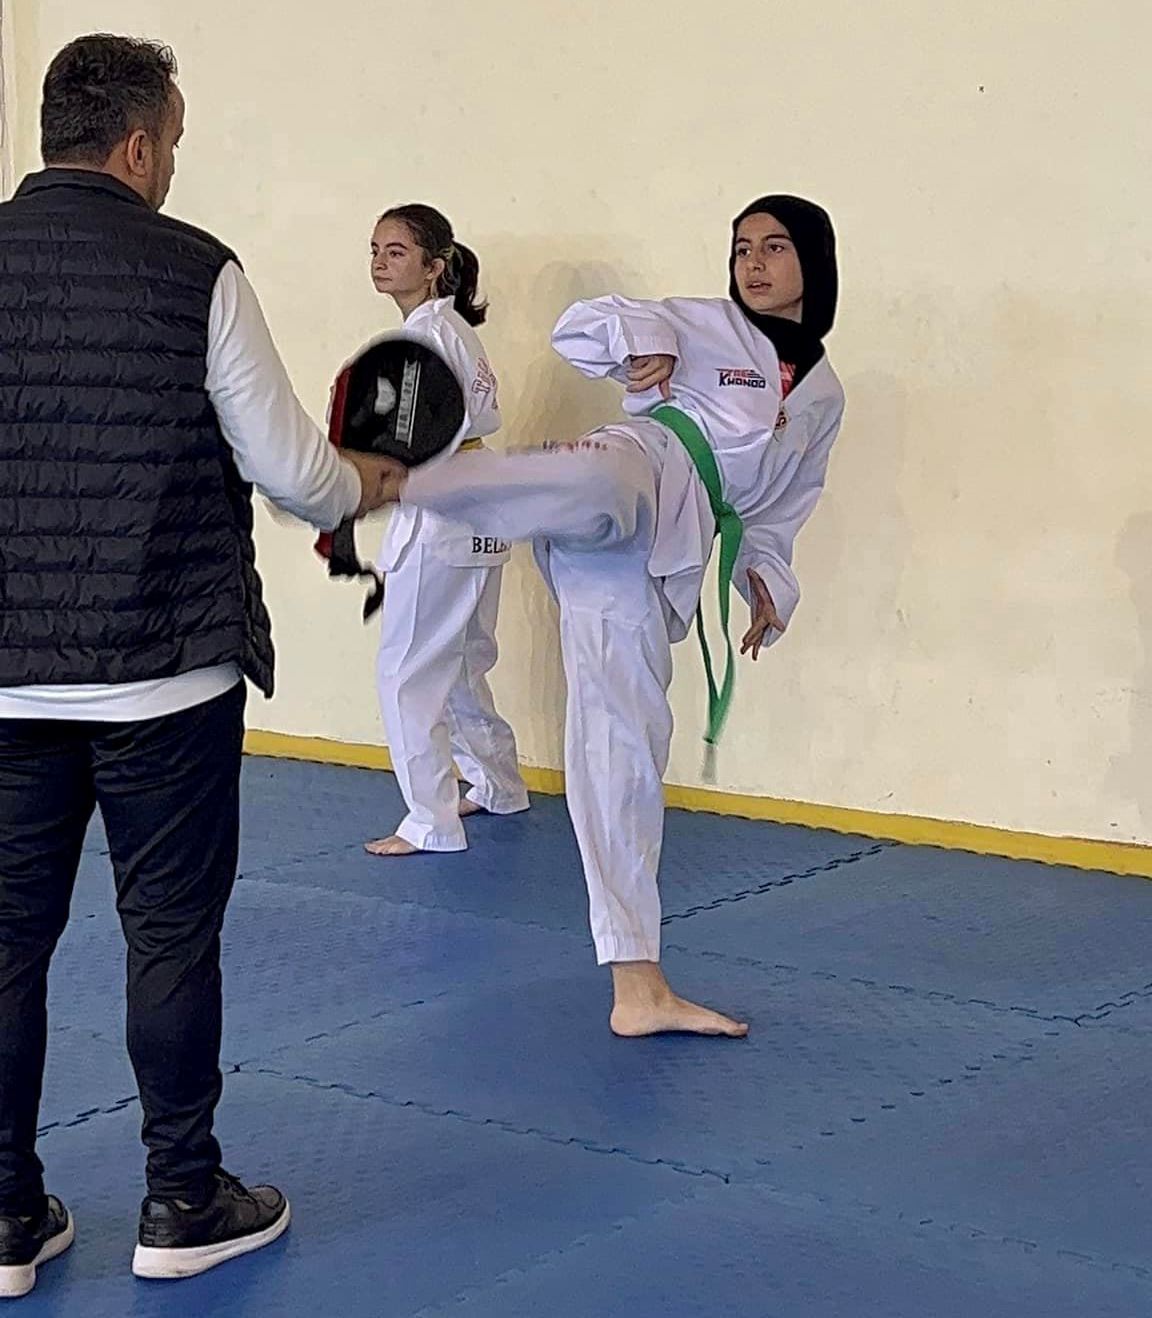 yalova-altınova-belediyespor-taekwondo-milli-takım-hedef-spor (1)